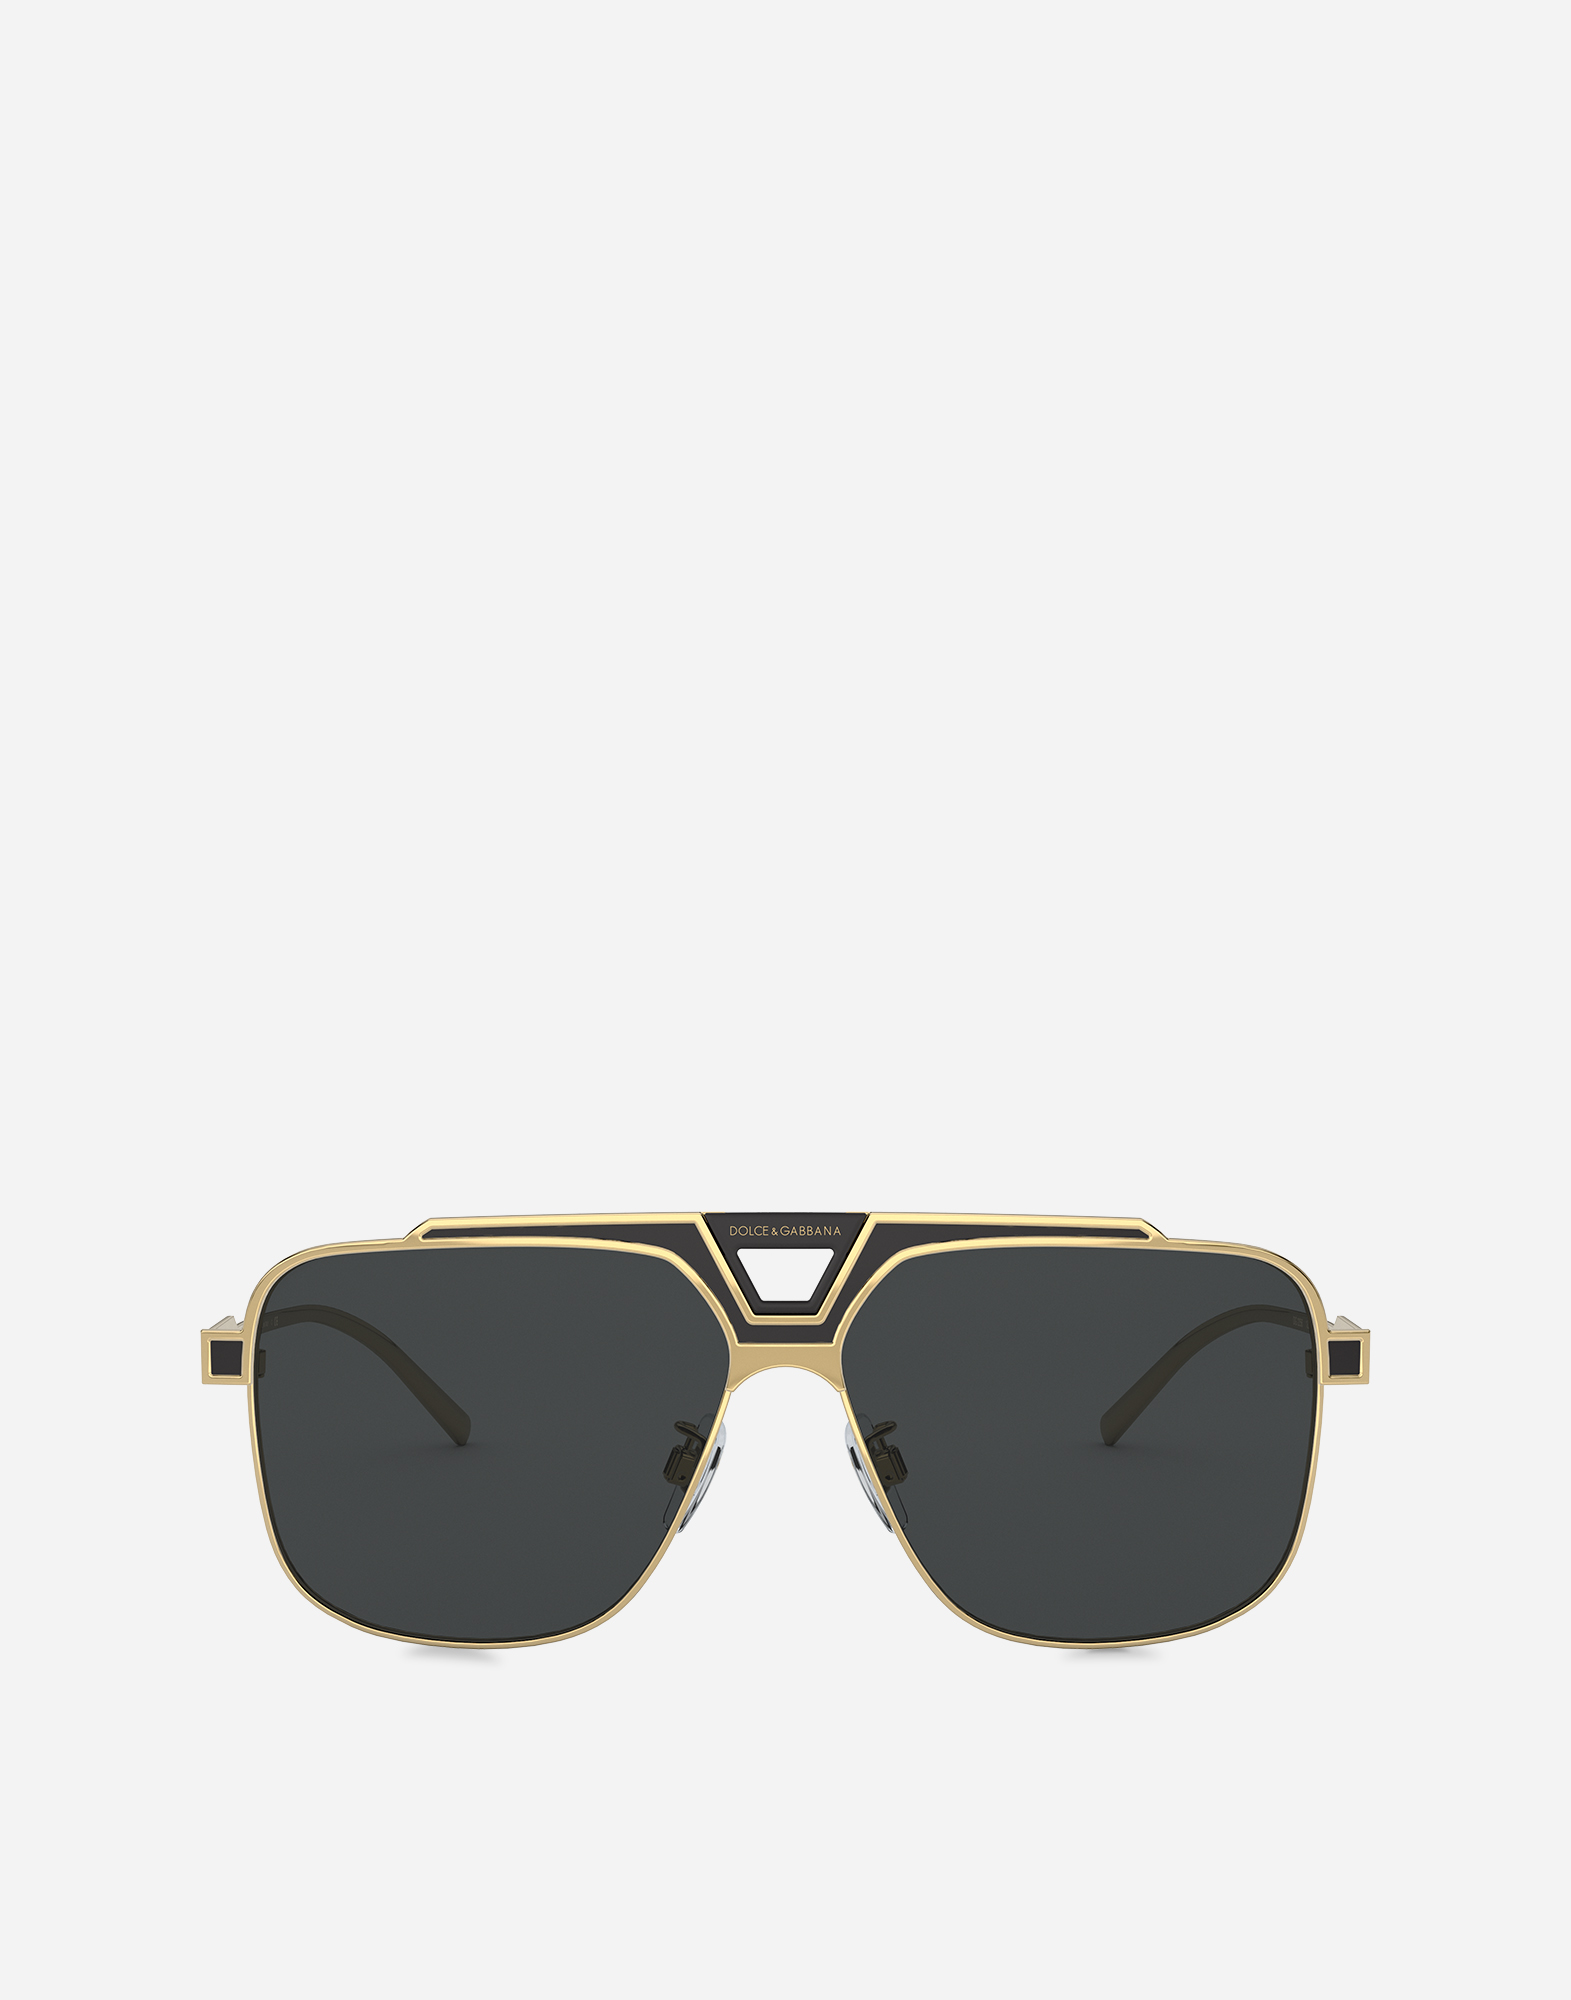 dolce gabbana sunglasses